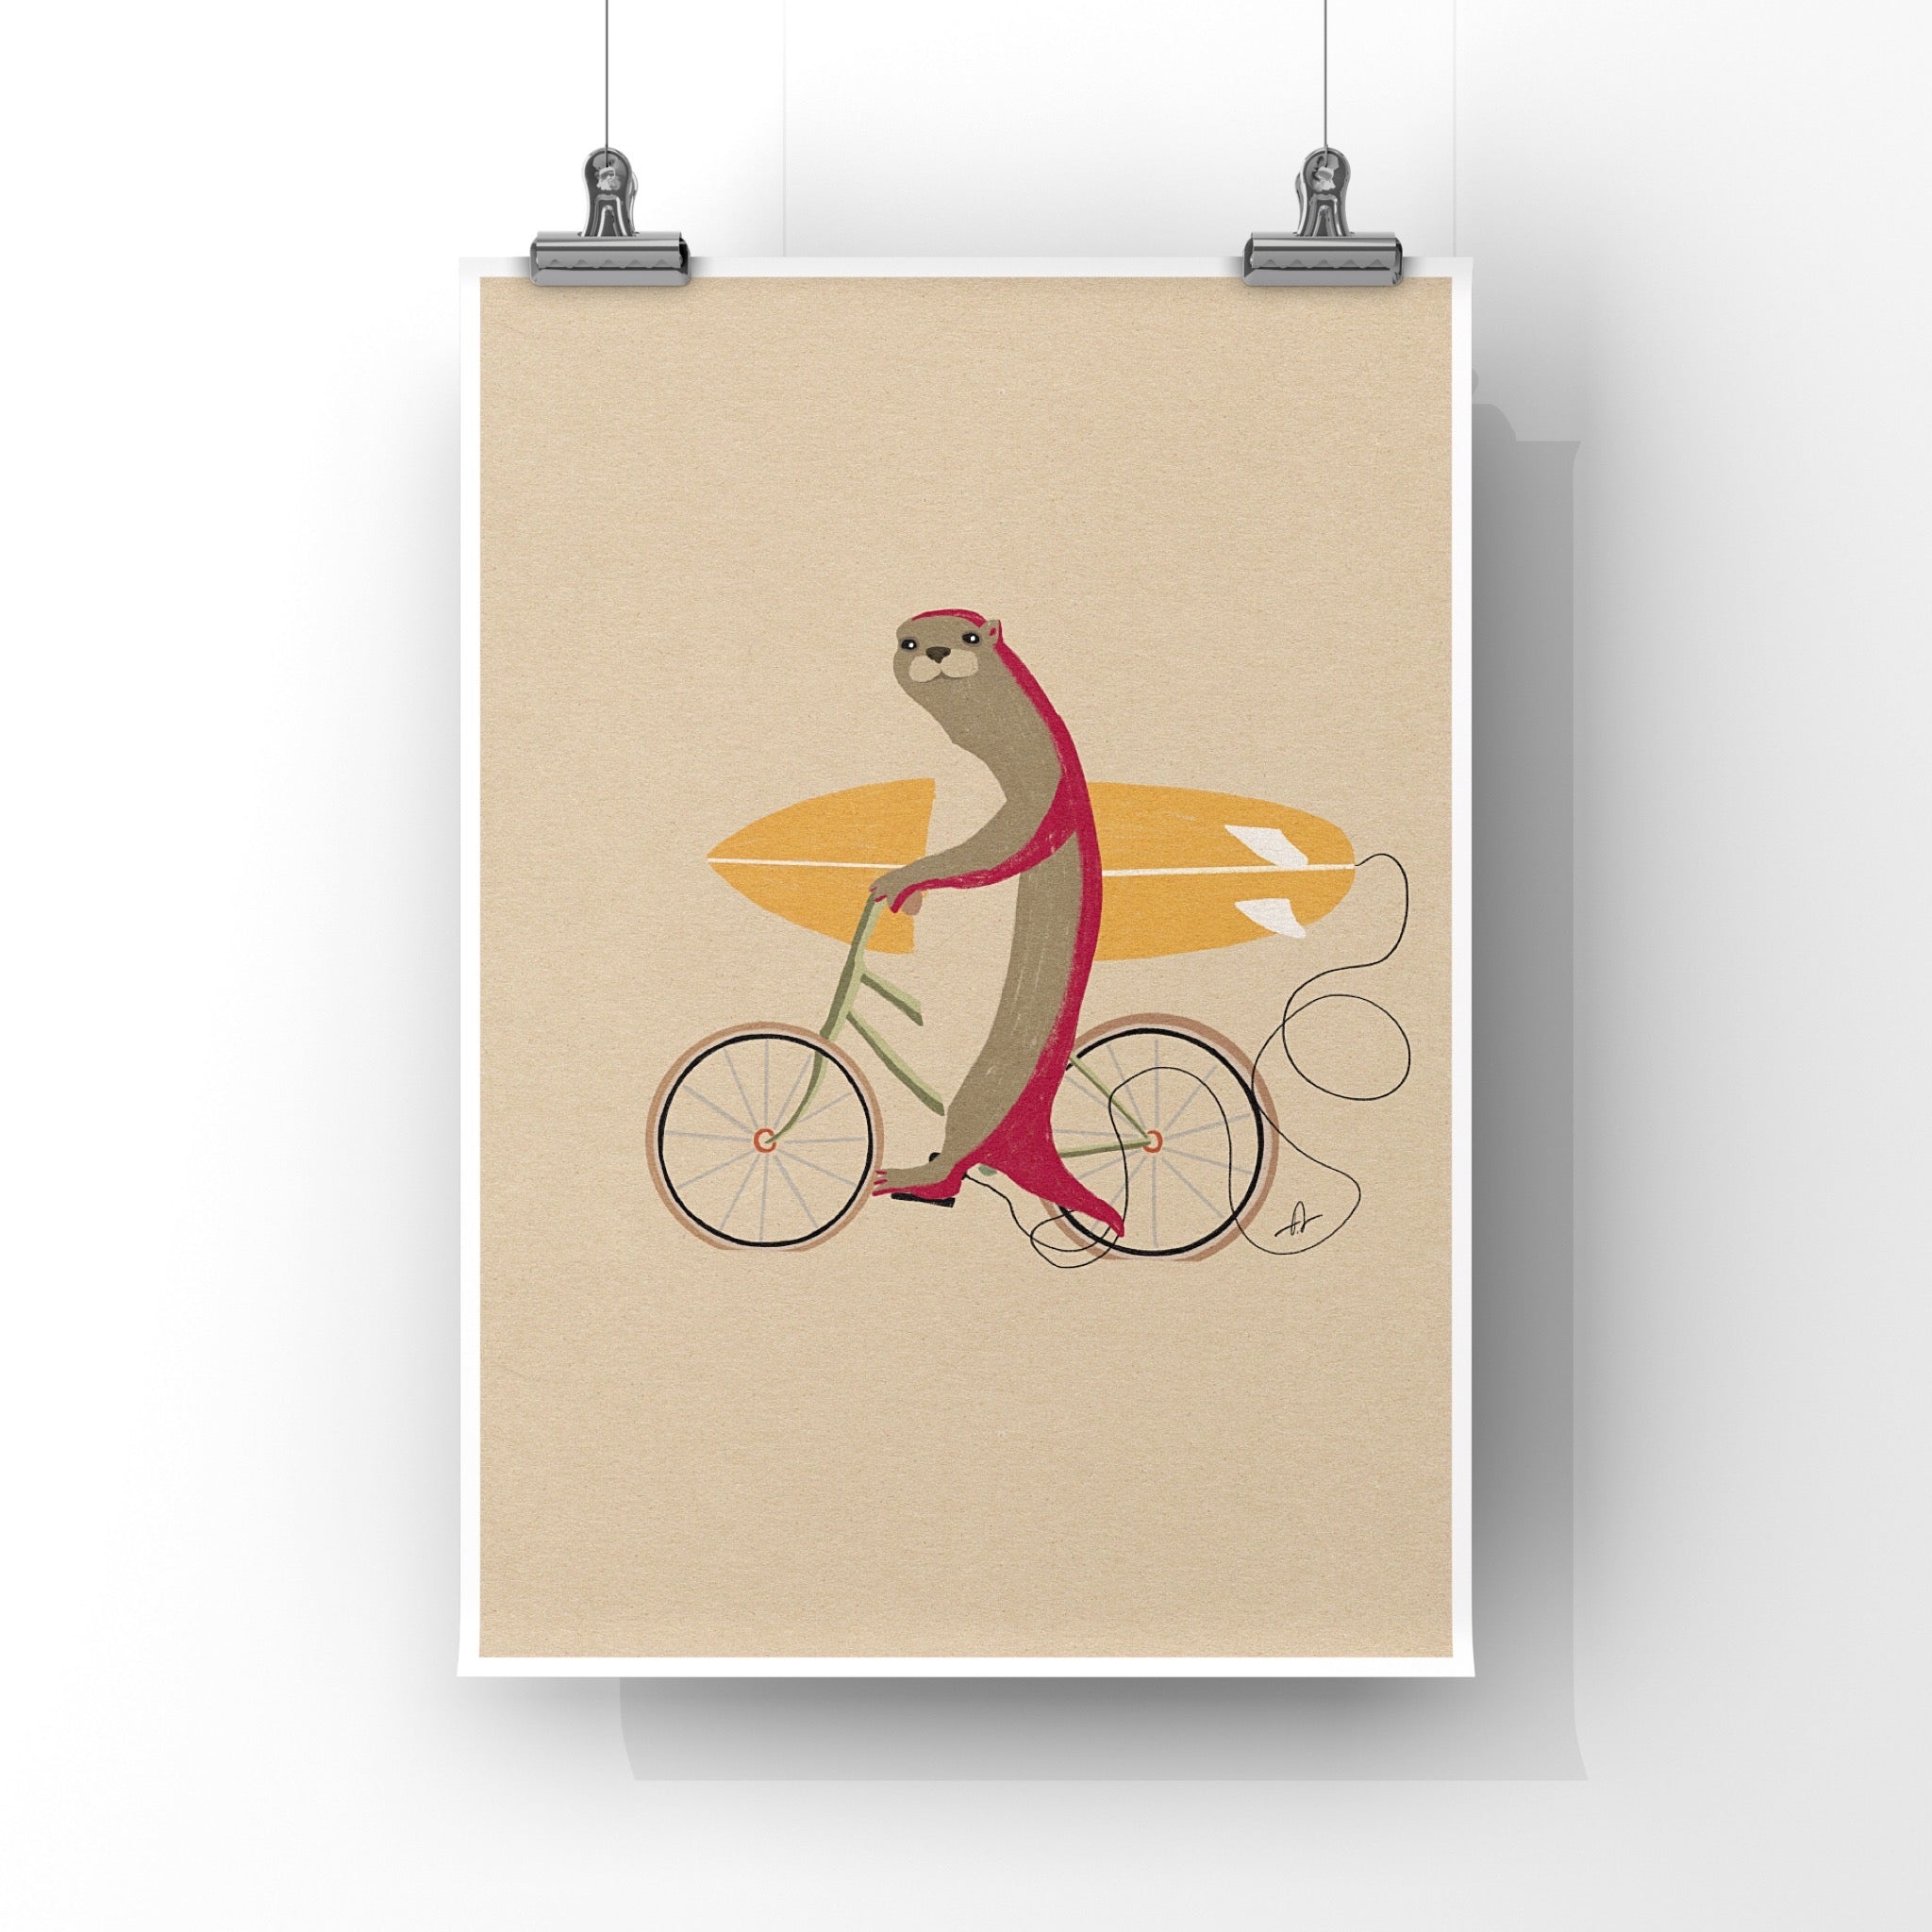 An otter riding a bike holding a surfboard Art Print